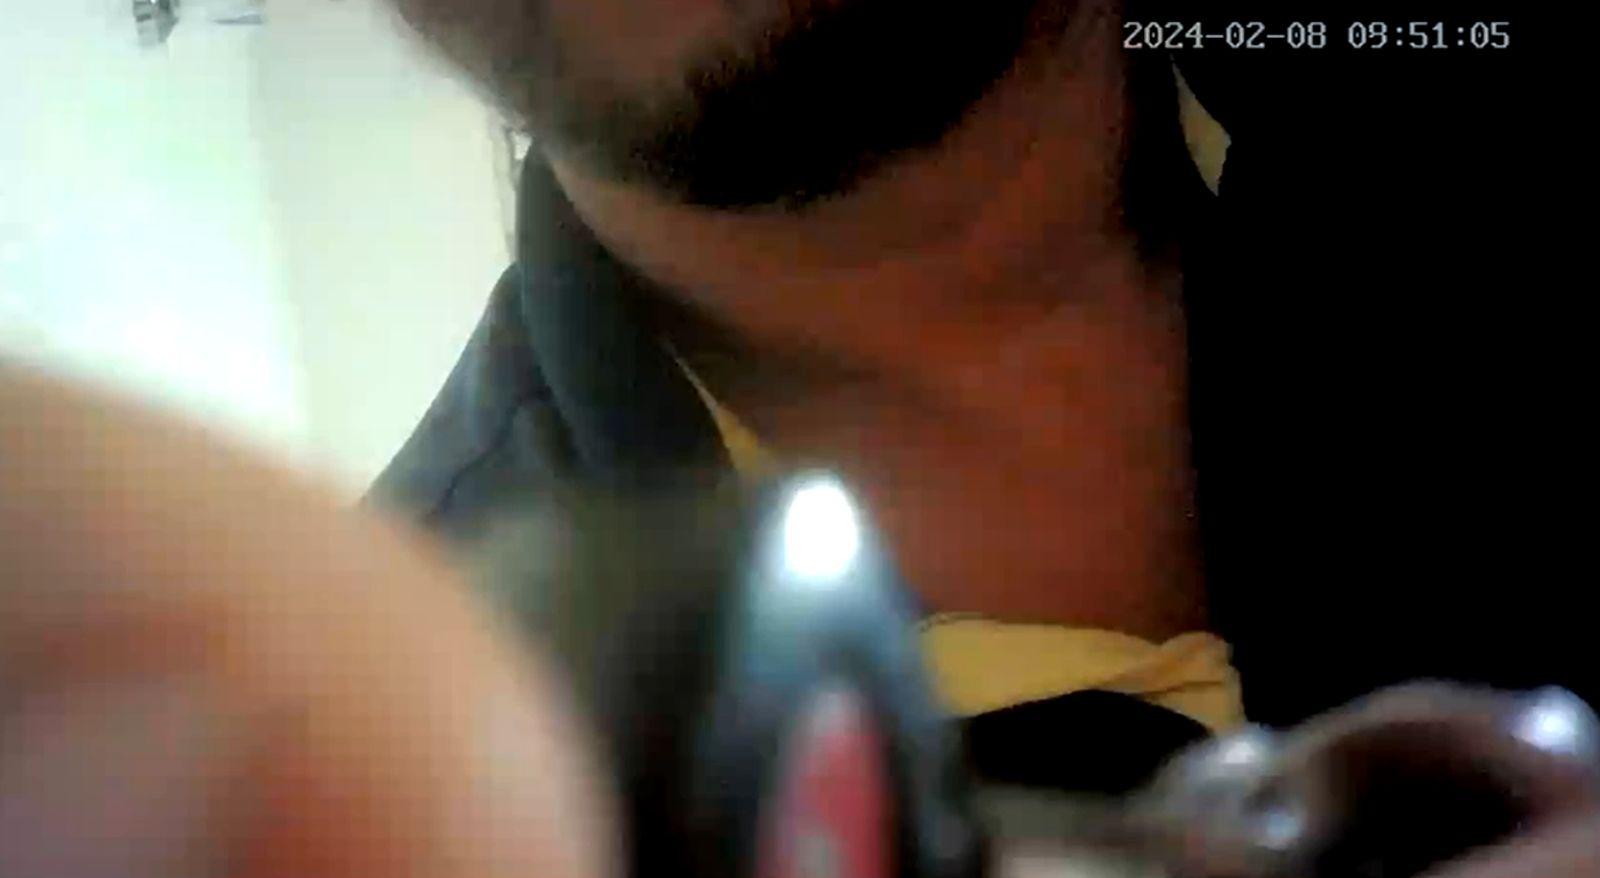 Francismar Fernandes da Silva. Imagens mostram locador arrumando câmera oculta que filmou adolescente em banheiro de casa alugada